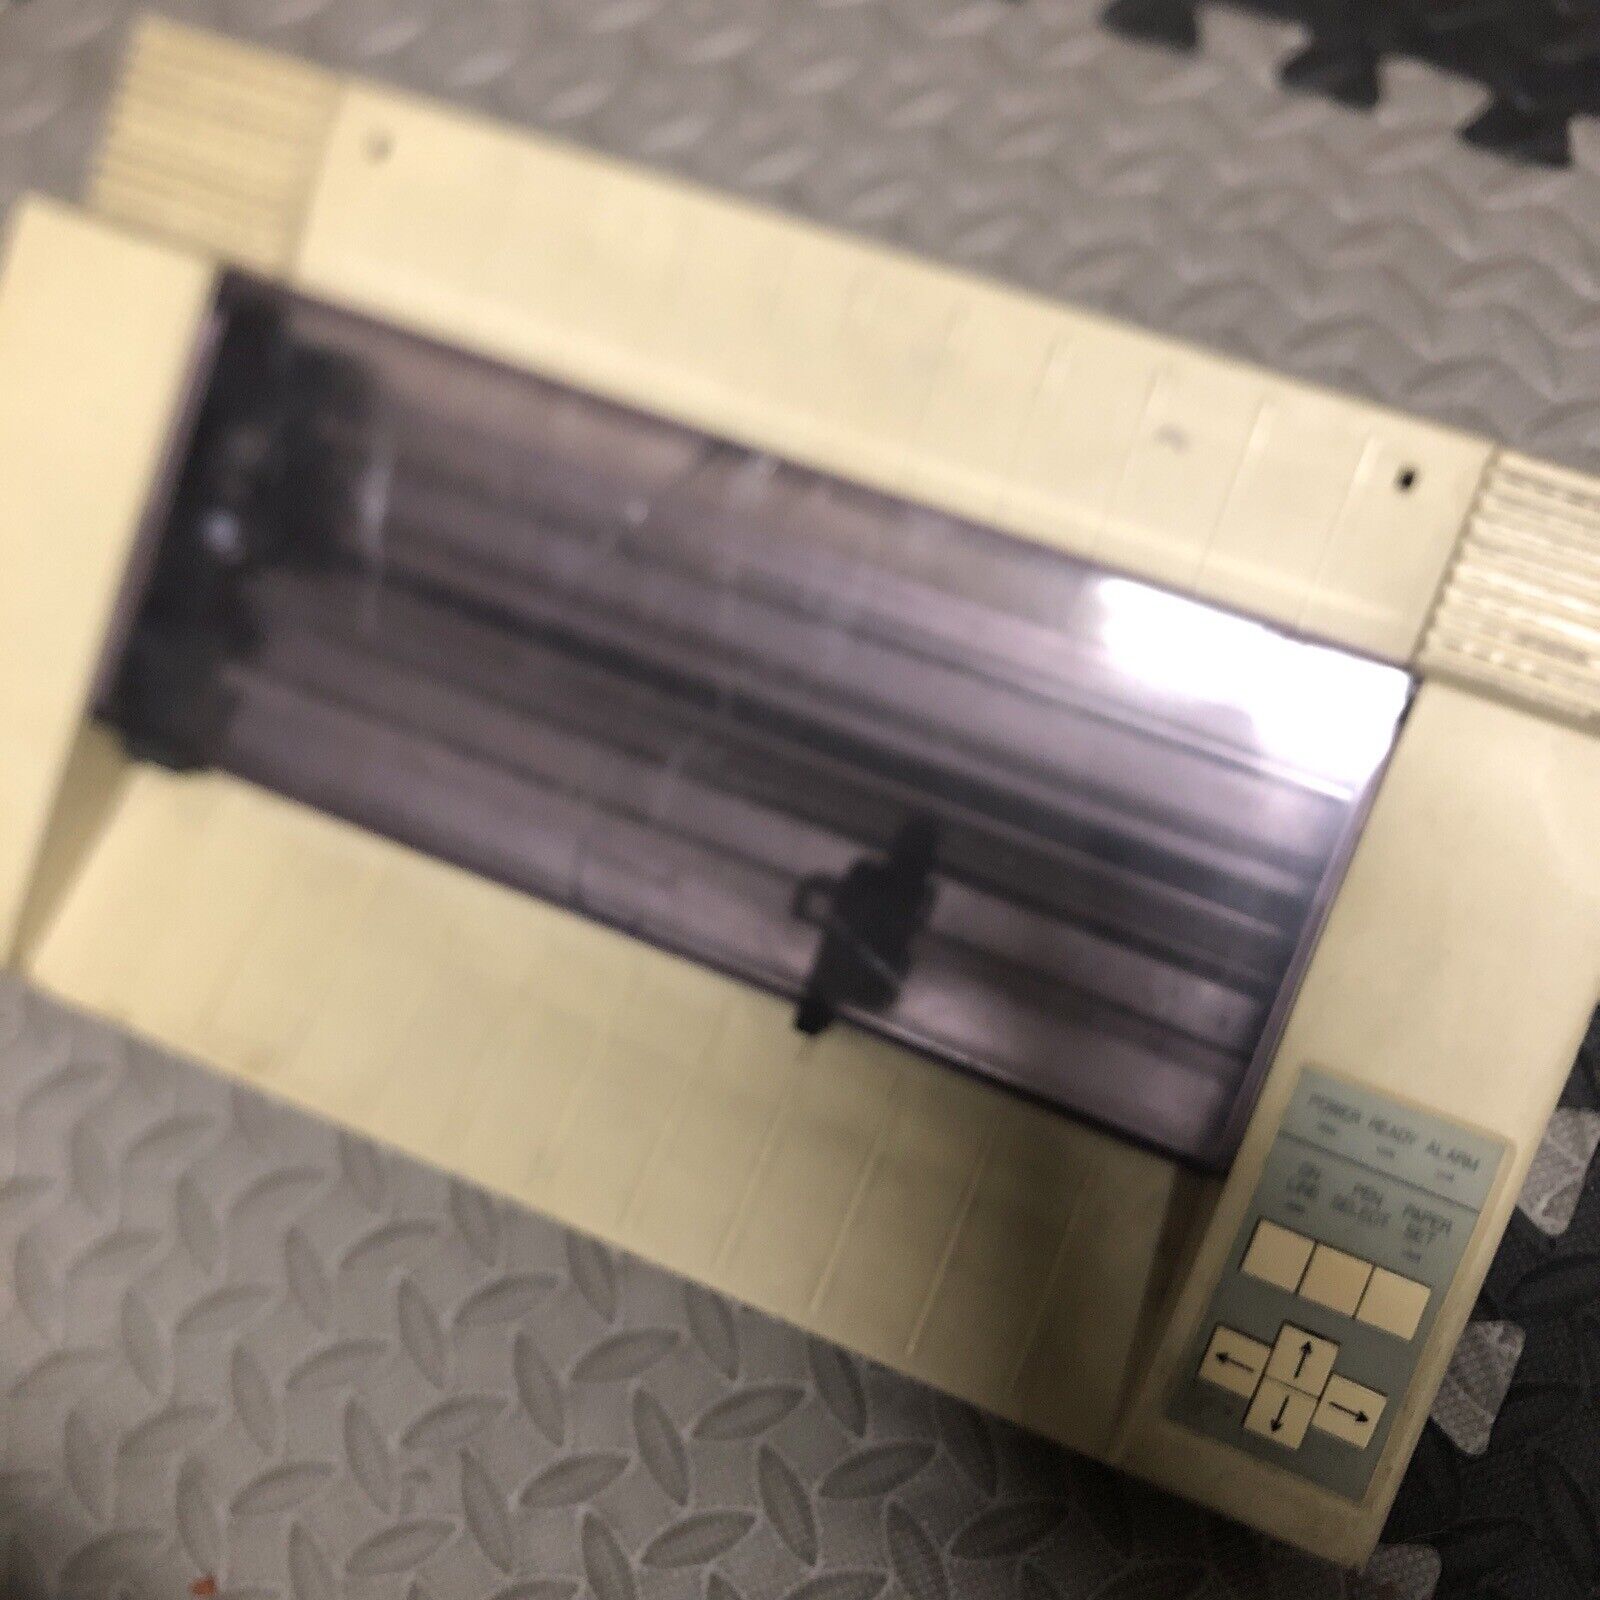 RARE VINTAGE COLOR PLOTTER Printer Made In Japan